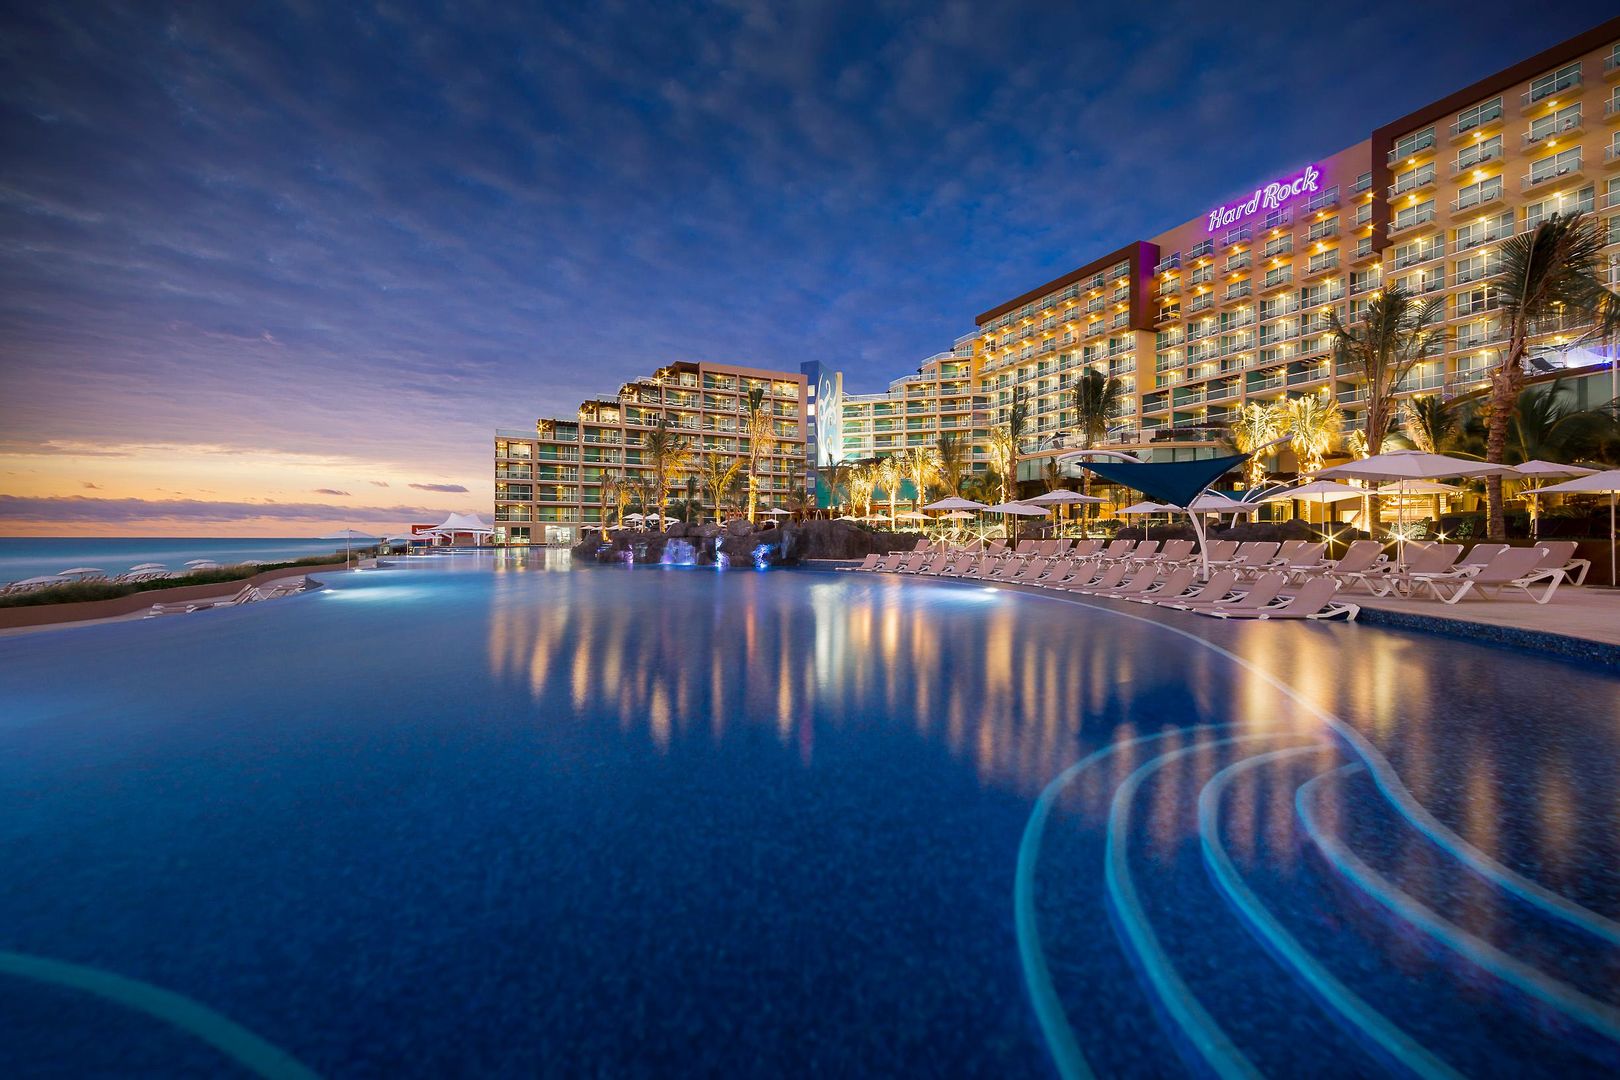 Obrázek hotelu Hard Rock Hotel Cancun